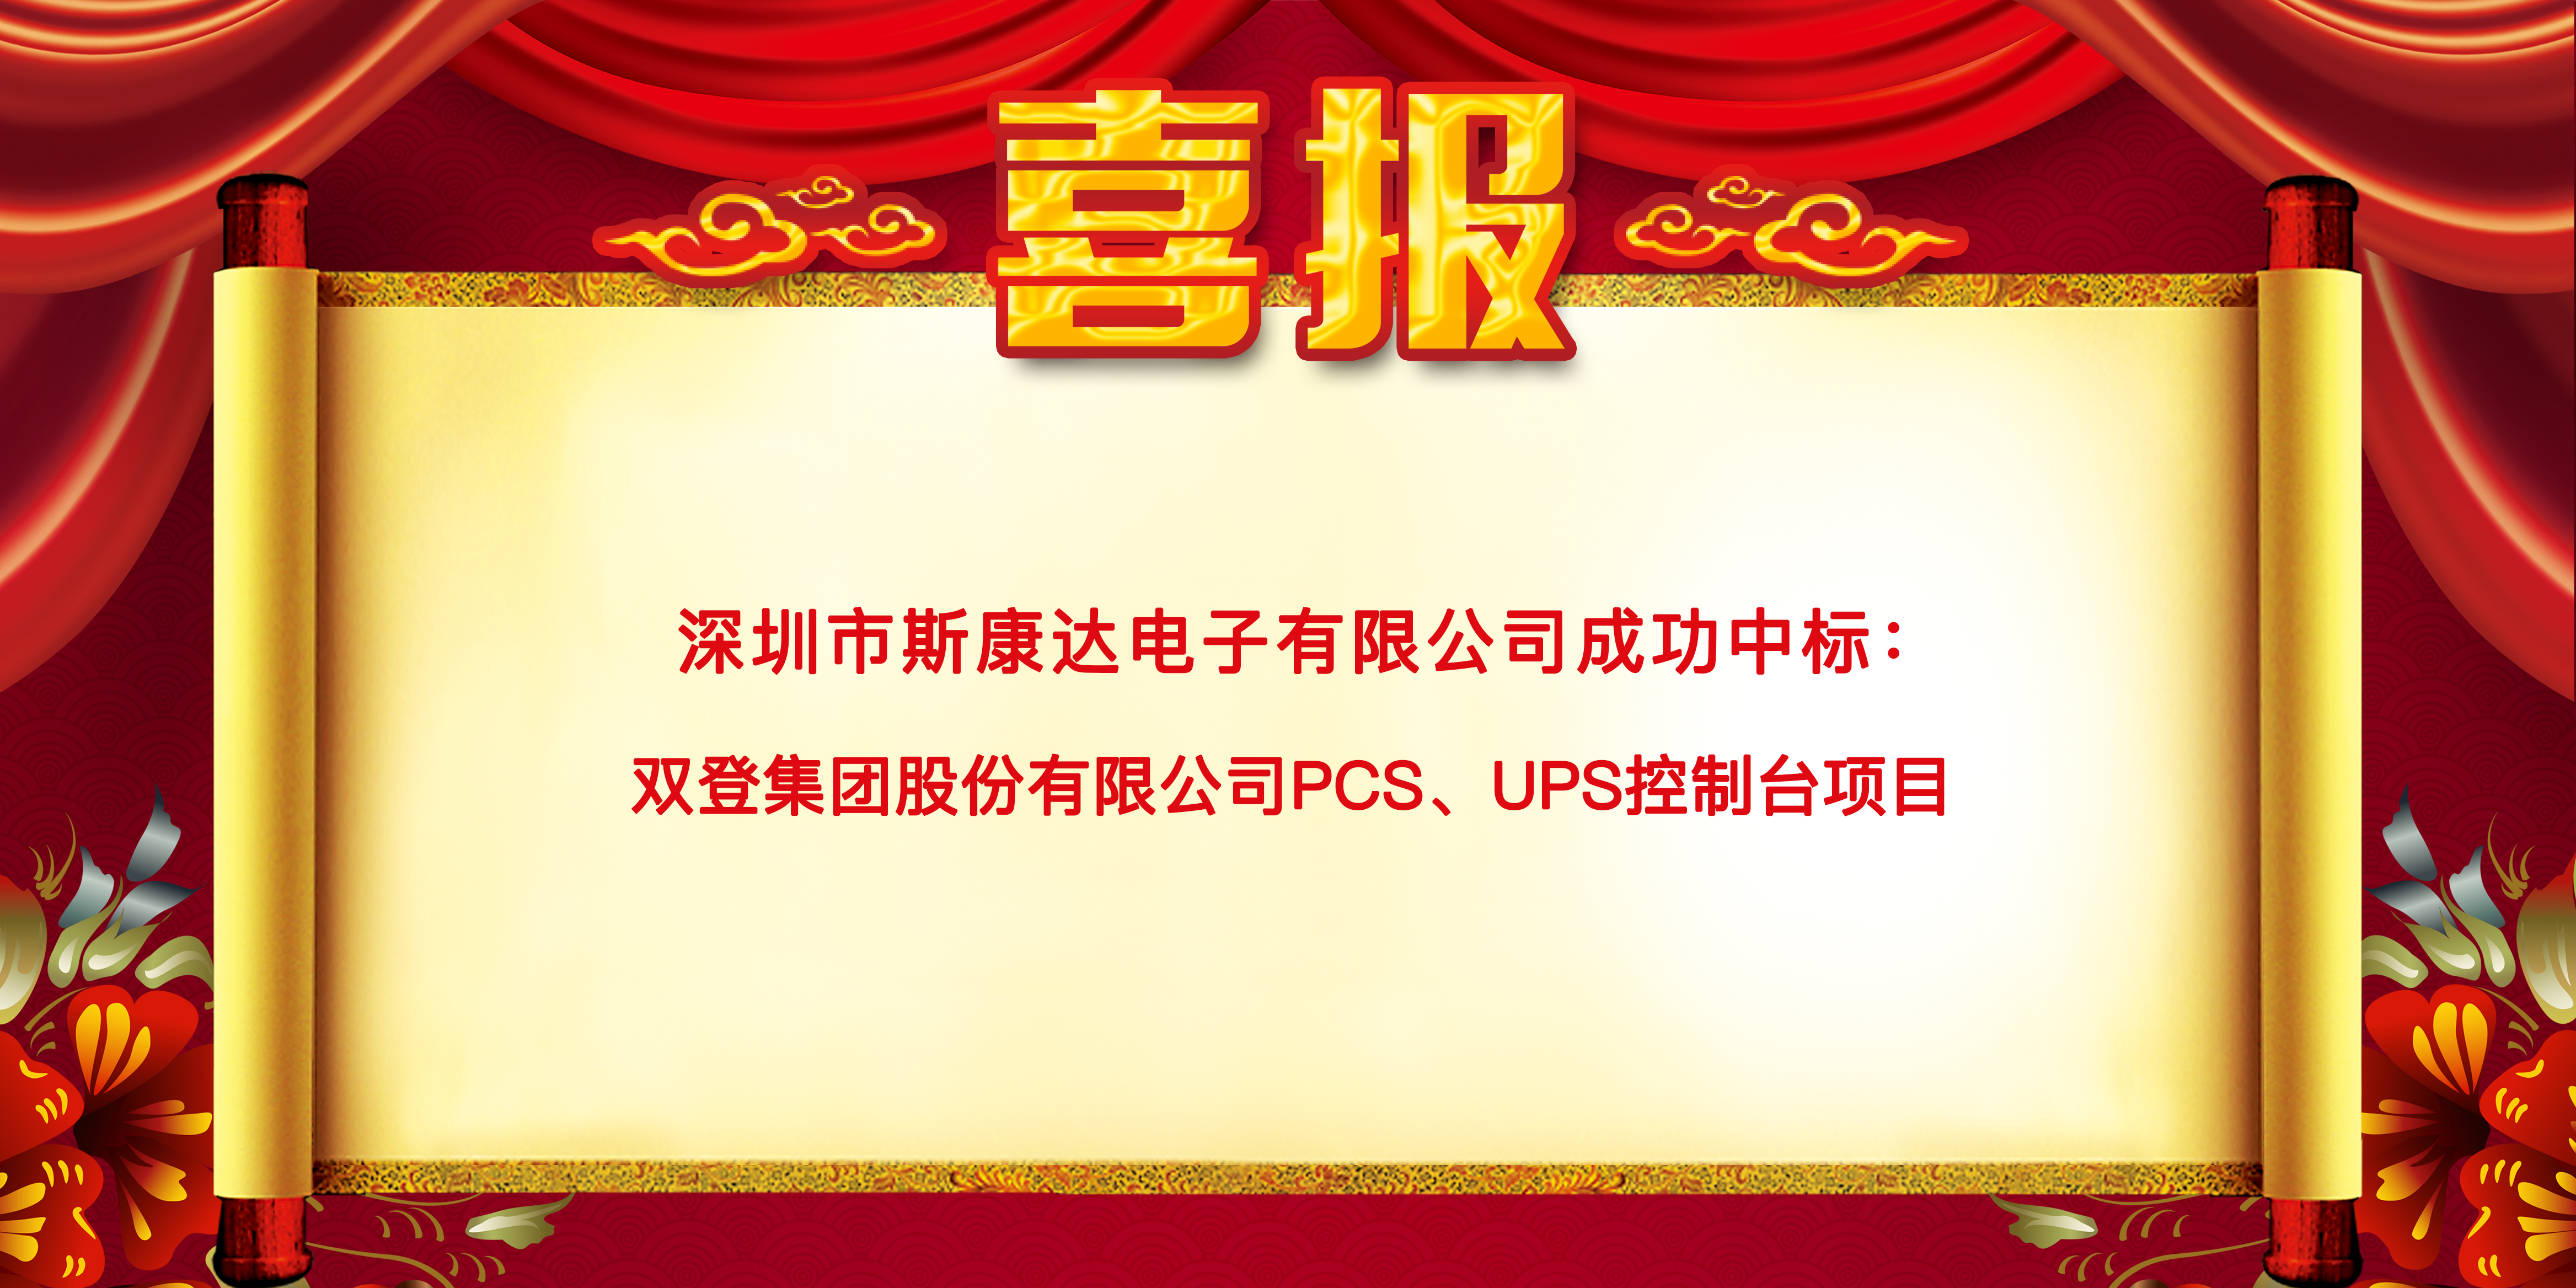 喜报|新普京澳门娱乐场网站中标双登集团股份有限公司 “PCS、UPS控制台项目”(图1)